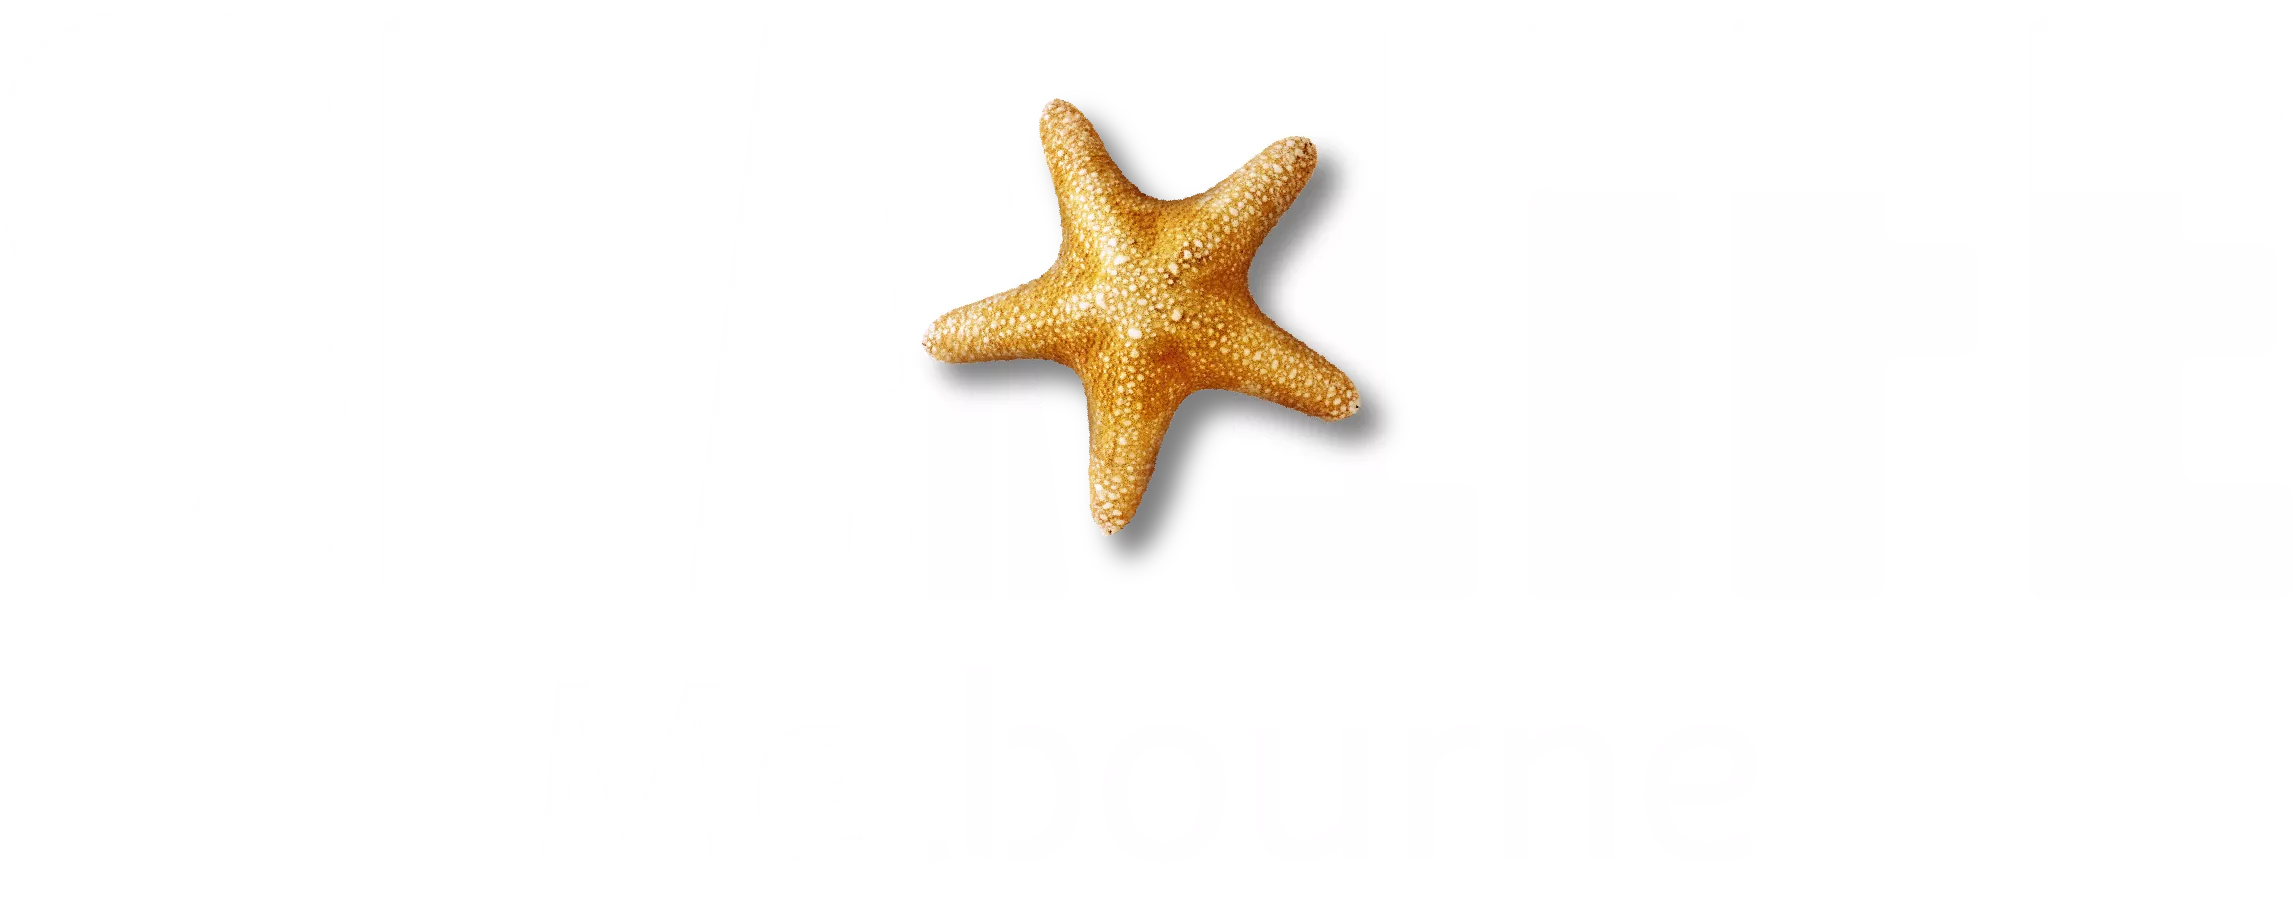 SEA LIFE + Melbourne (White Text) RGB